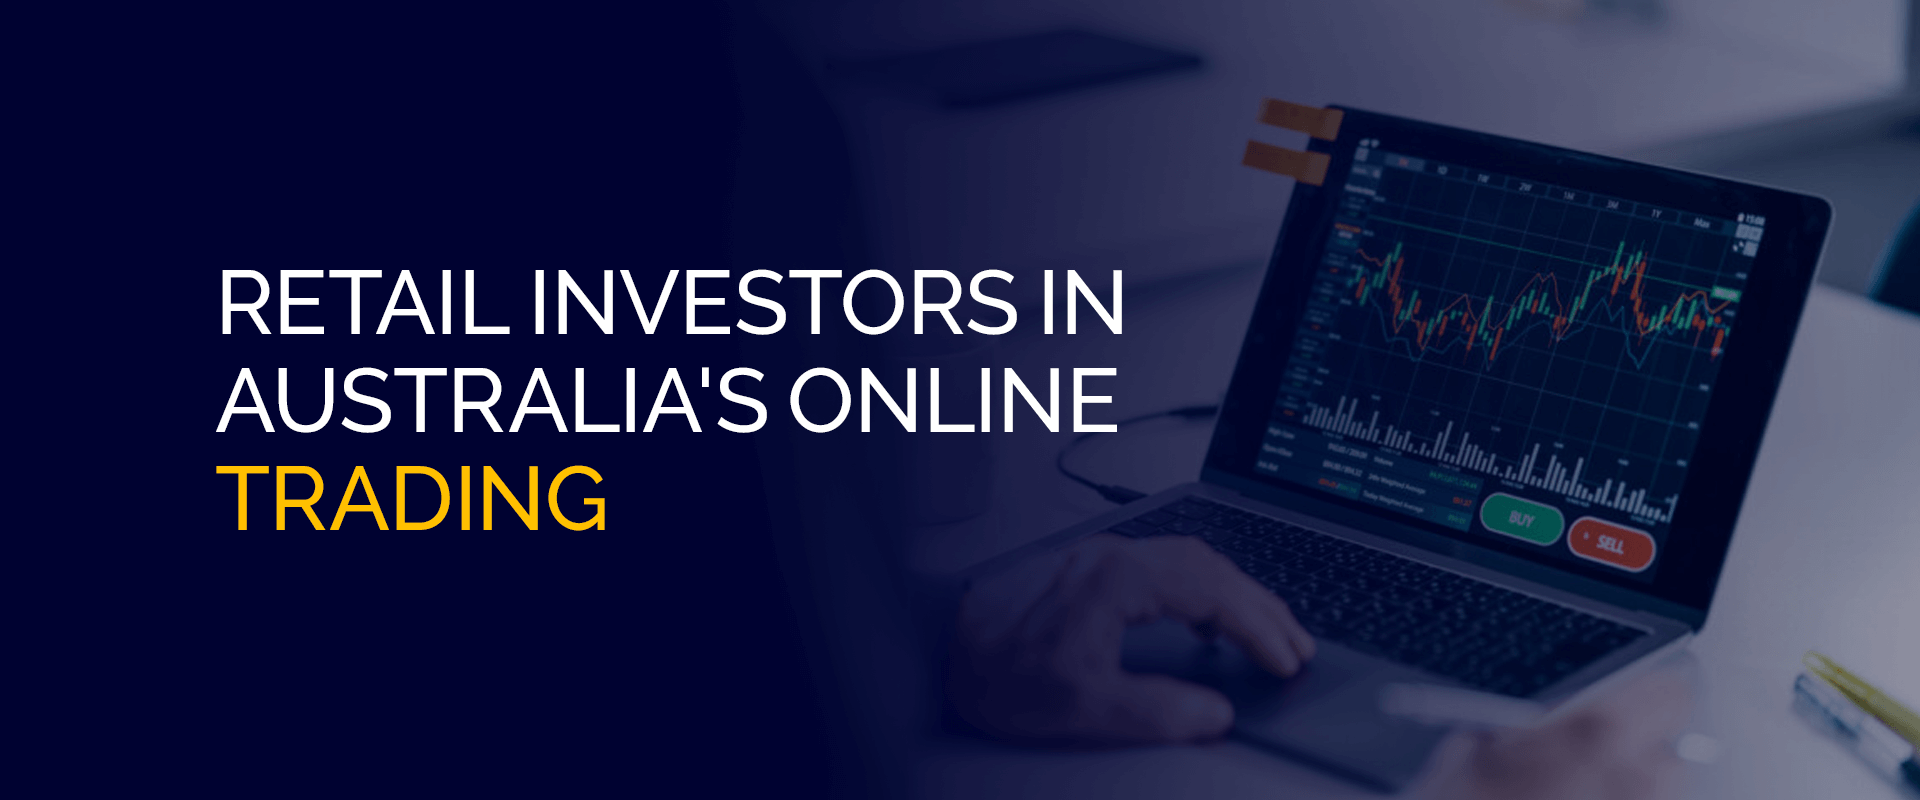 سرمایه گذاران خرد در تجارت آنلاین استرالیا-(f)